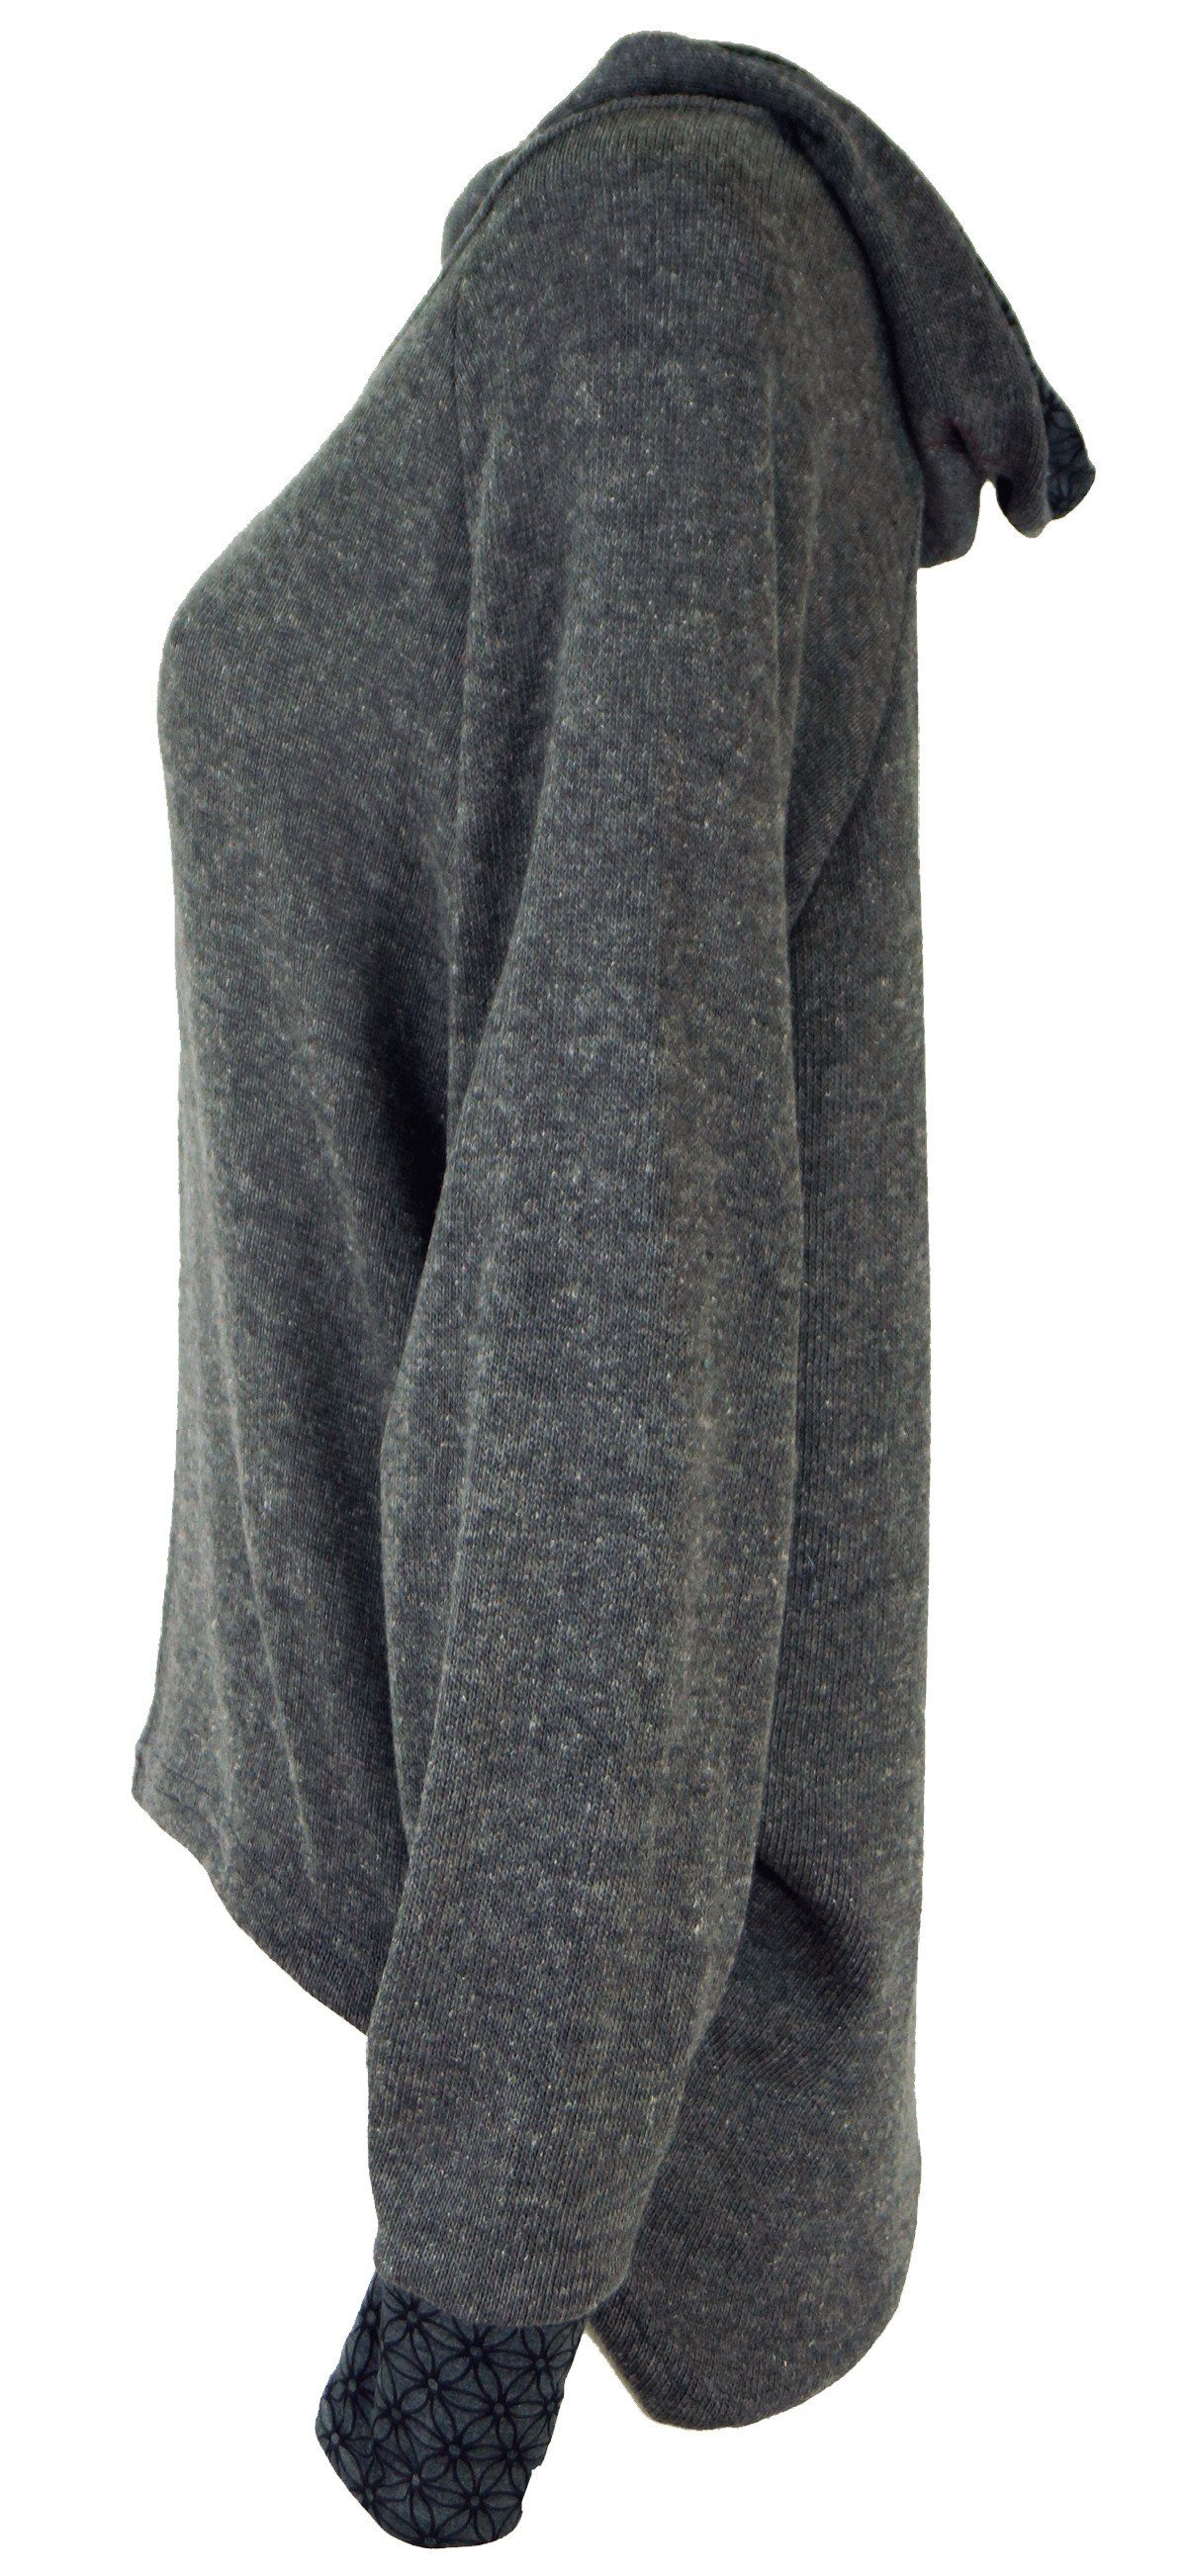 grau Bekleidung Hoody, Kapuzenpullover Longsleeve alternative Sweatshirt, Pullover, Guru-Shop -..